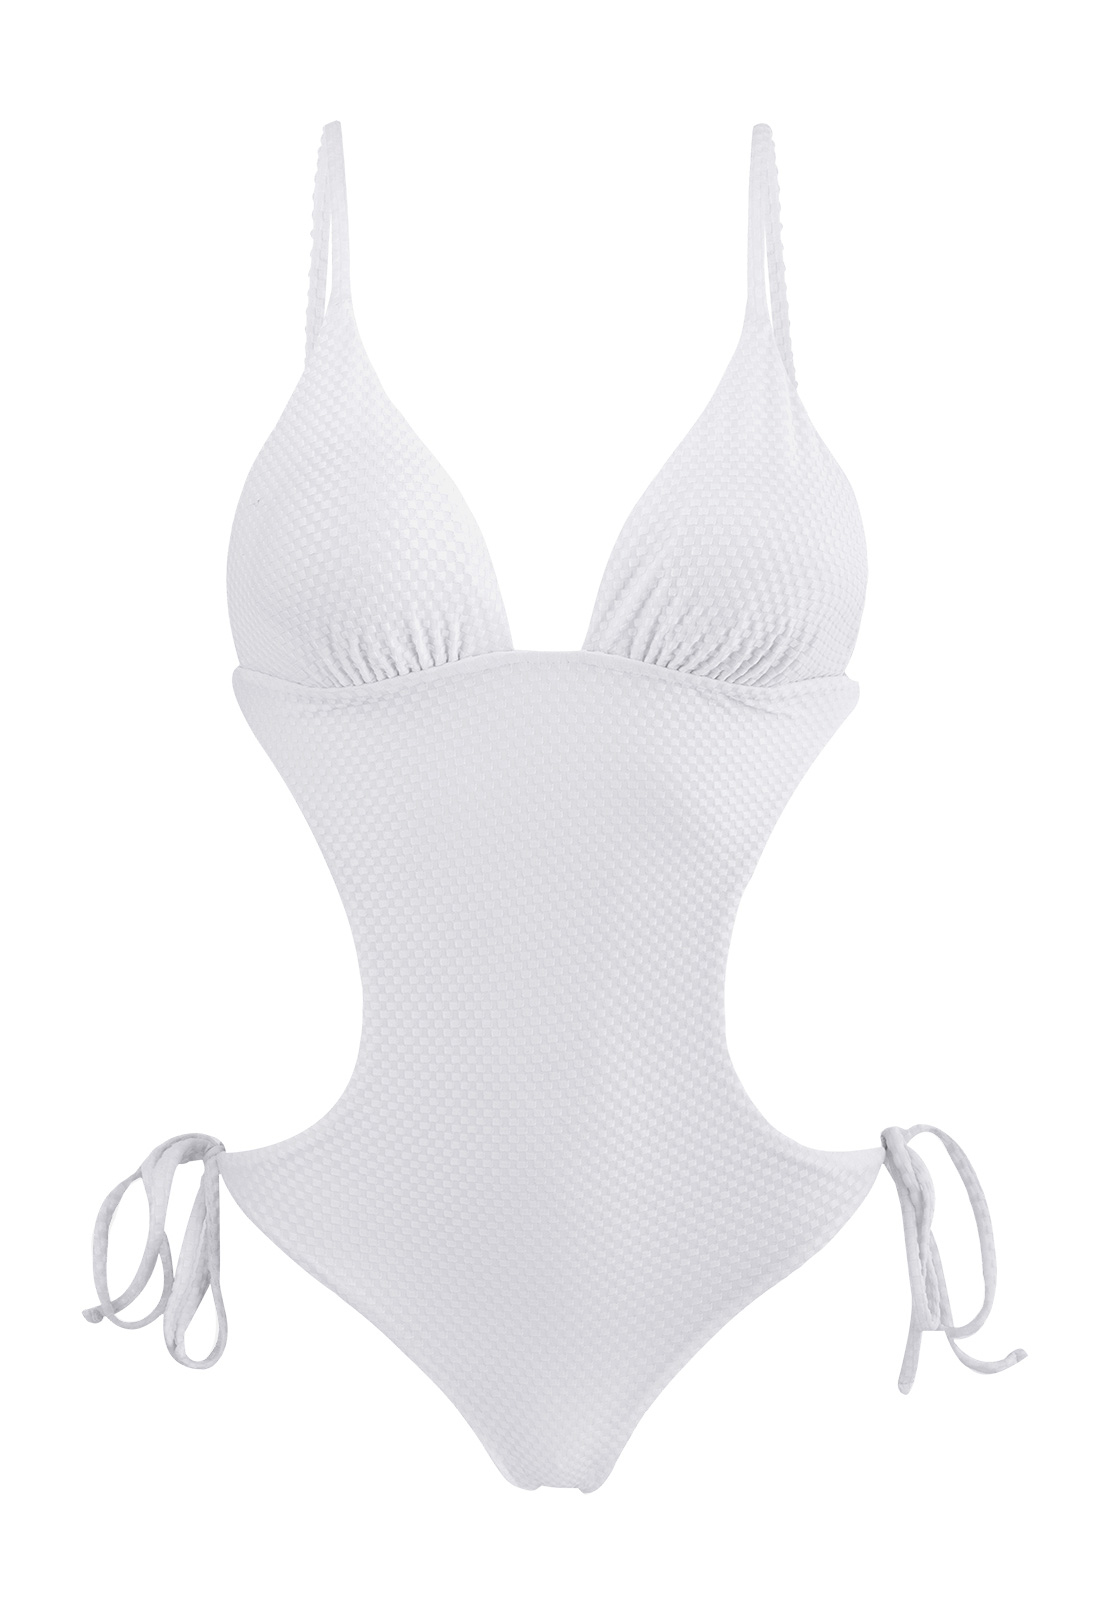 White Textured Brazilian Scrunch Monokini - Cloque Branco Trikini - Rio ...